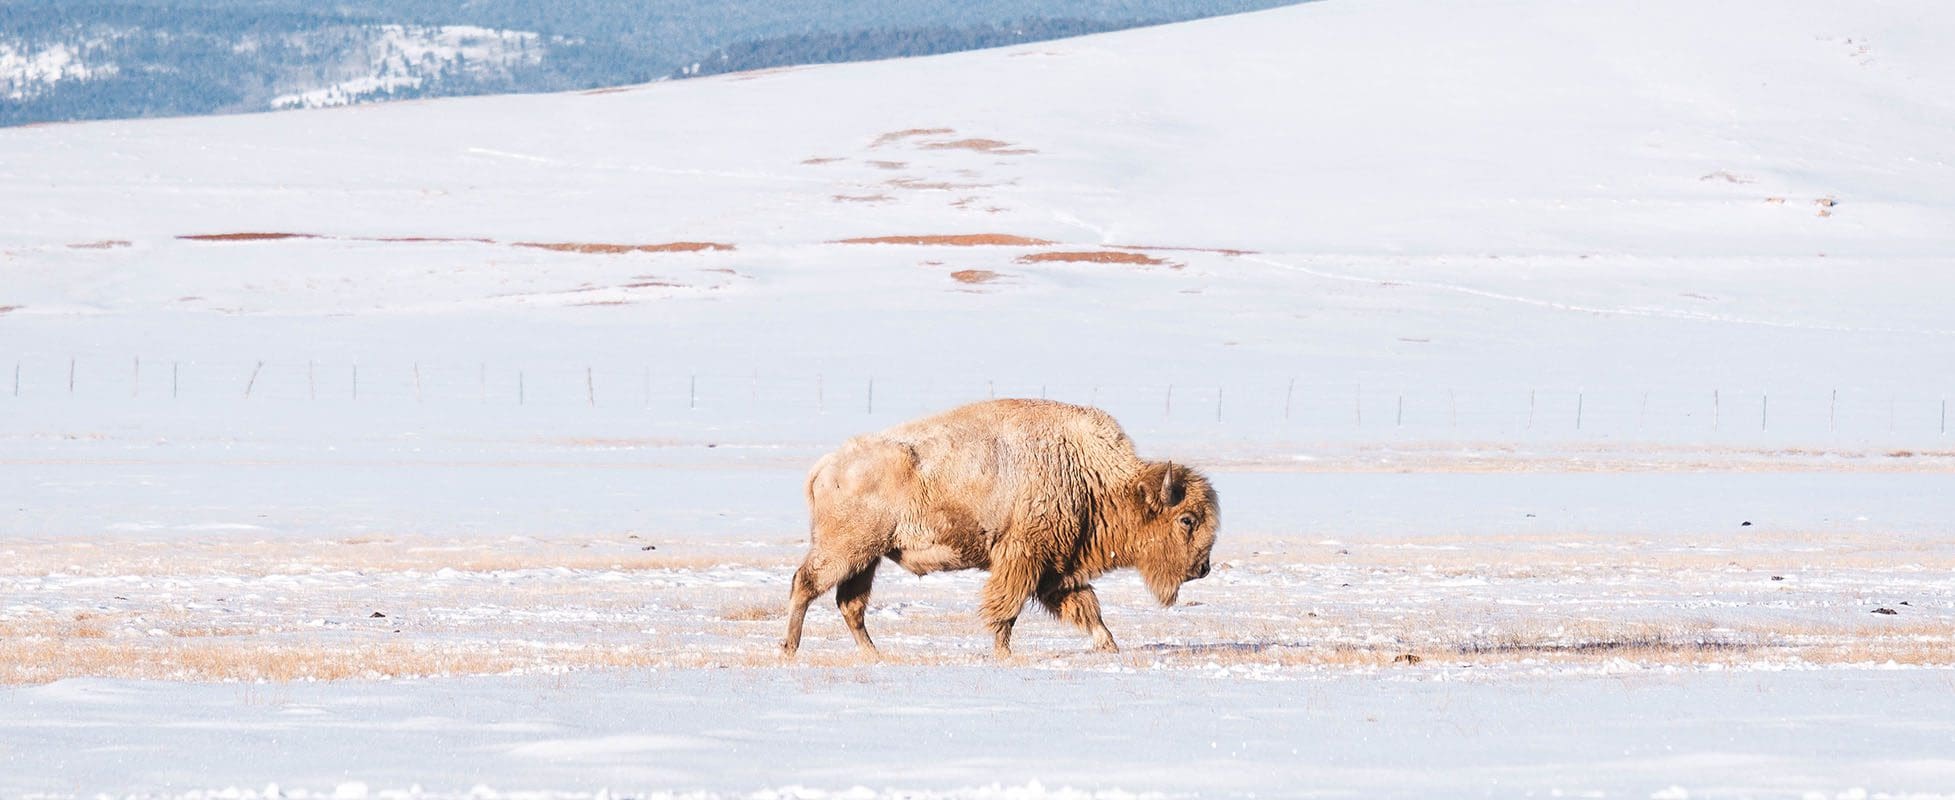 white buffalo walking on snowy field